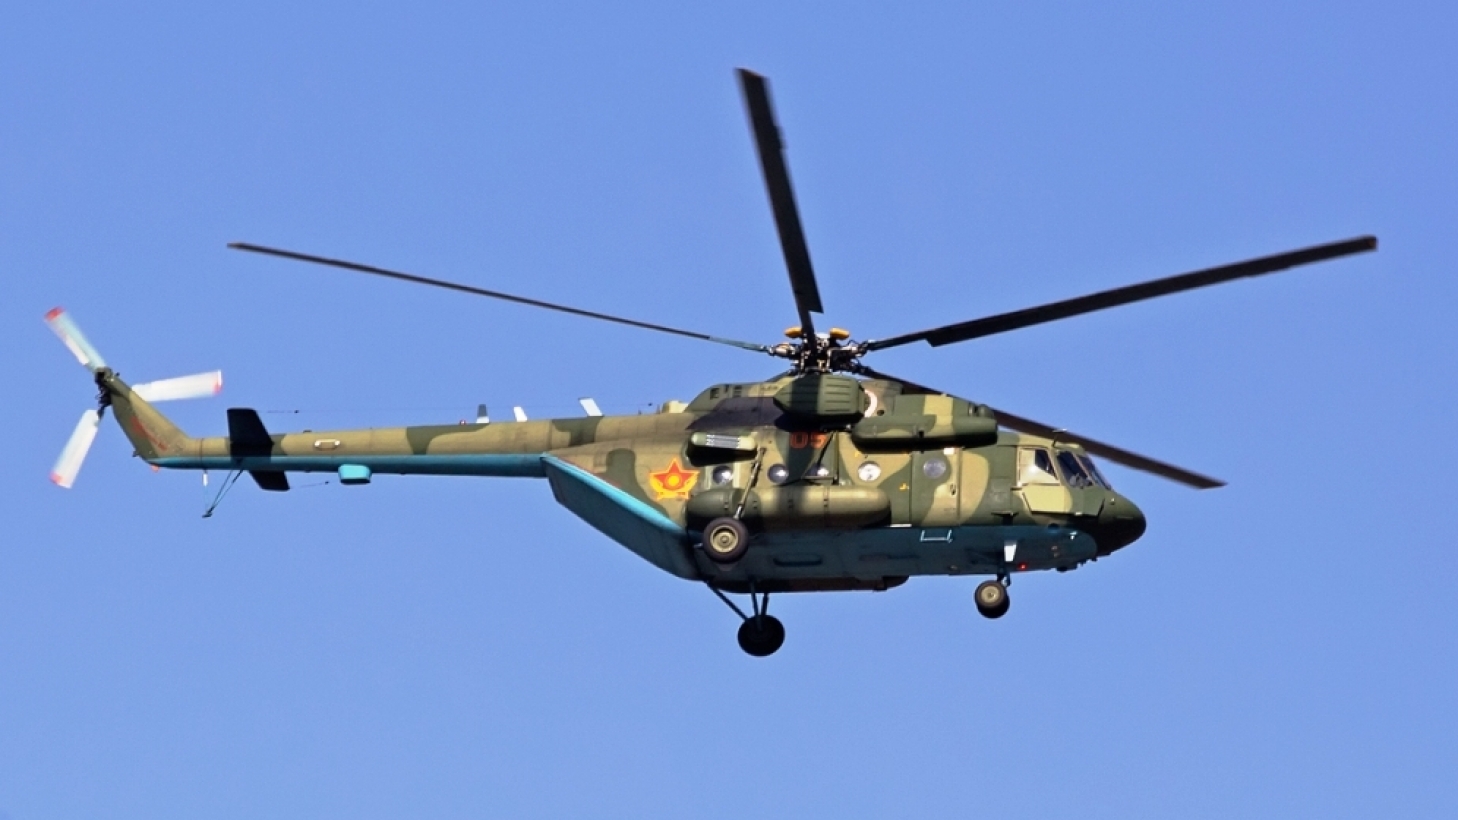 Крушение вертолета на юге РК расследуется по статье "Нарушение правил полета" – Генпрокуратура  